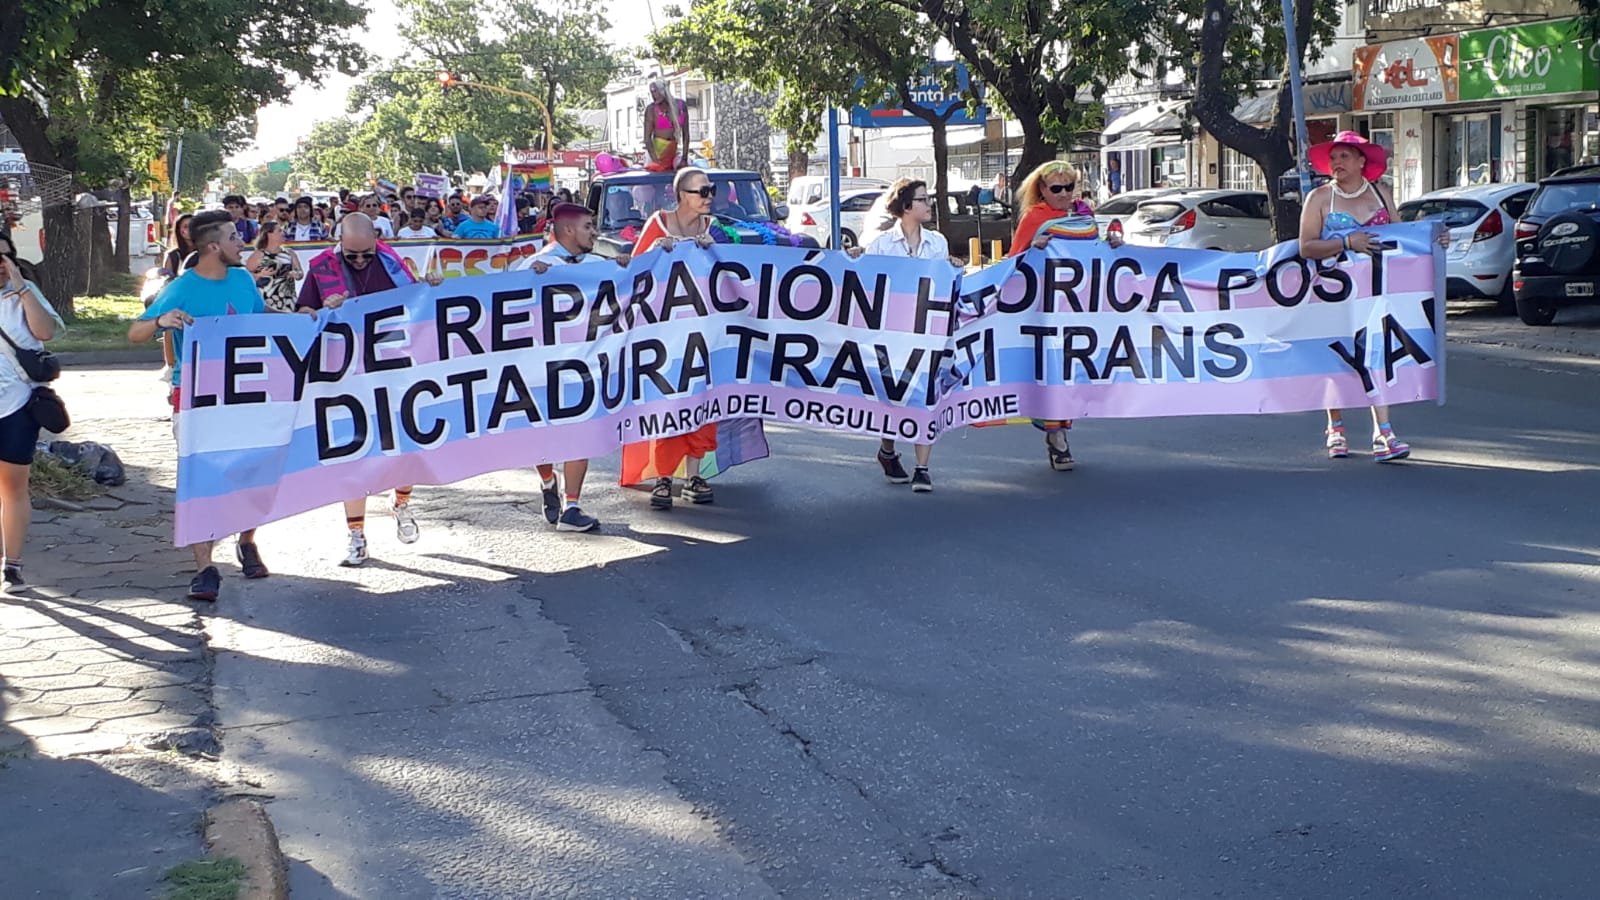 Militantes LGBT de la ciudad de Santo Tomé marchan por la calle con una barredora que dice Ley de Reparación Histórica post Dictadura Travesti Trans ya en la primera marcha del orgullo de la ciudad.